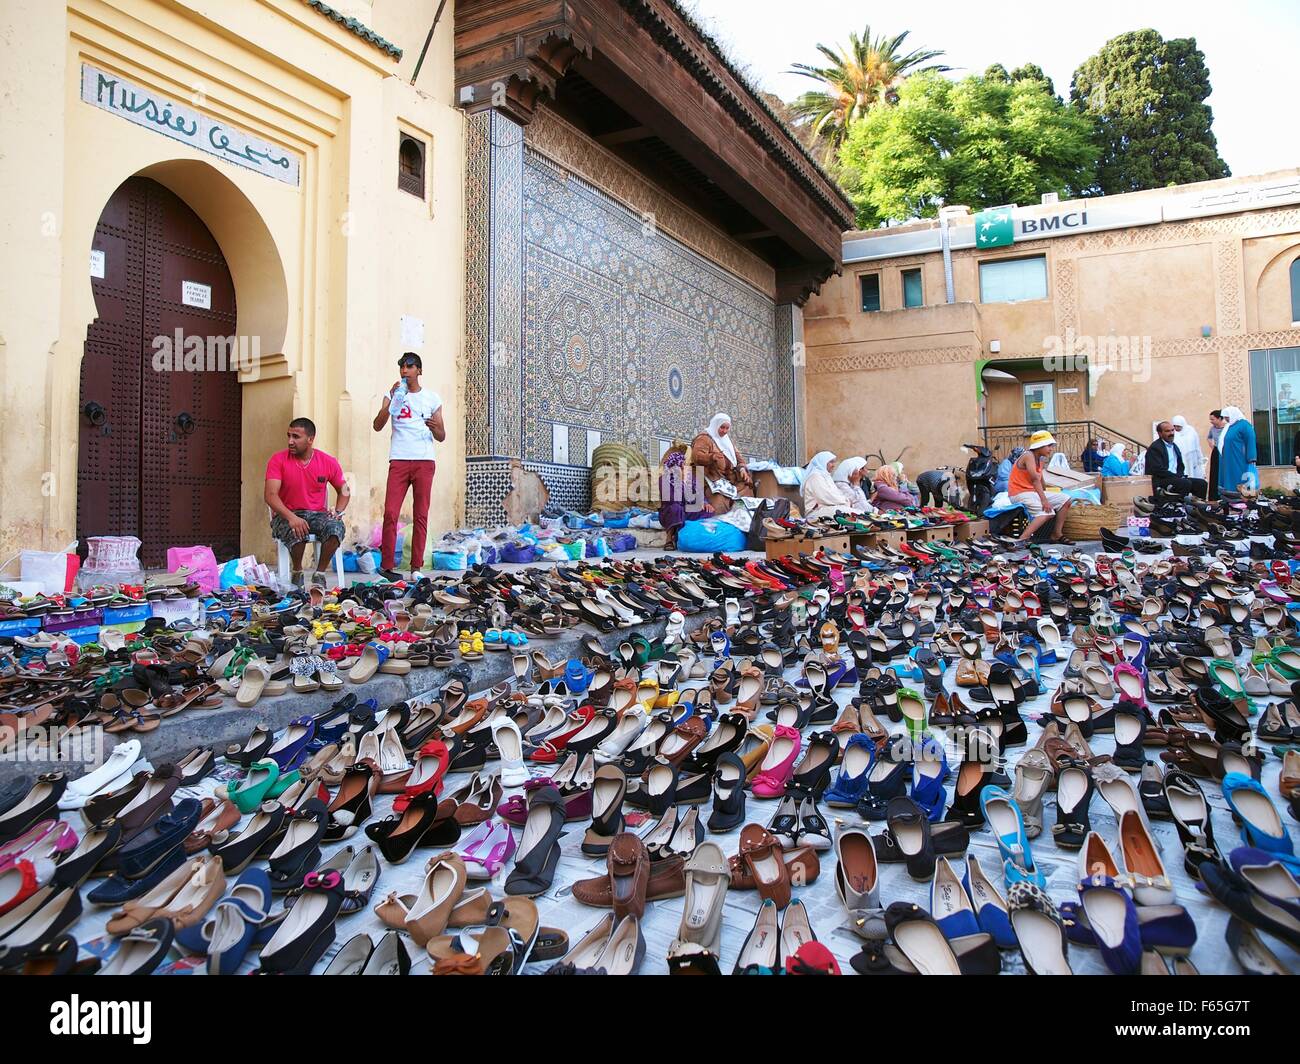 Babusch colorati - pantofole in pelle - in vendita nella Medina di Menès (Marocco). Qui una selezione di pantofole, realizzate principalmente in Foto Stock